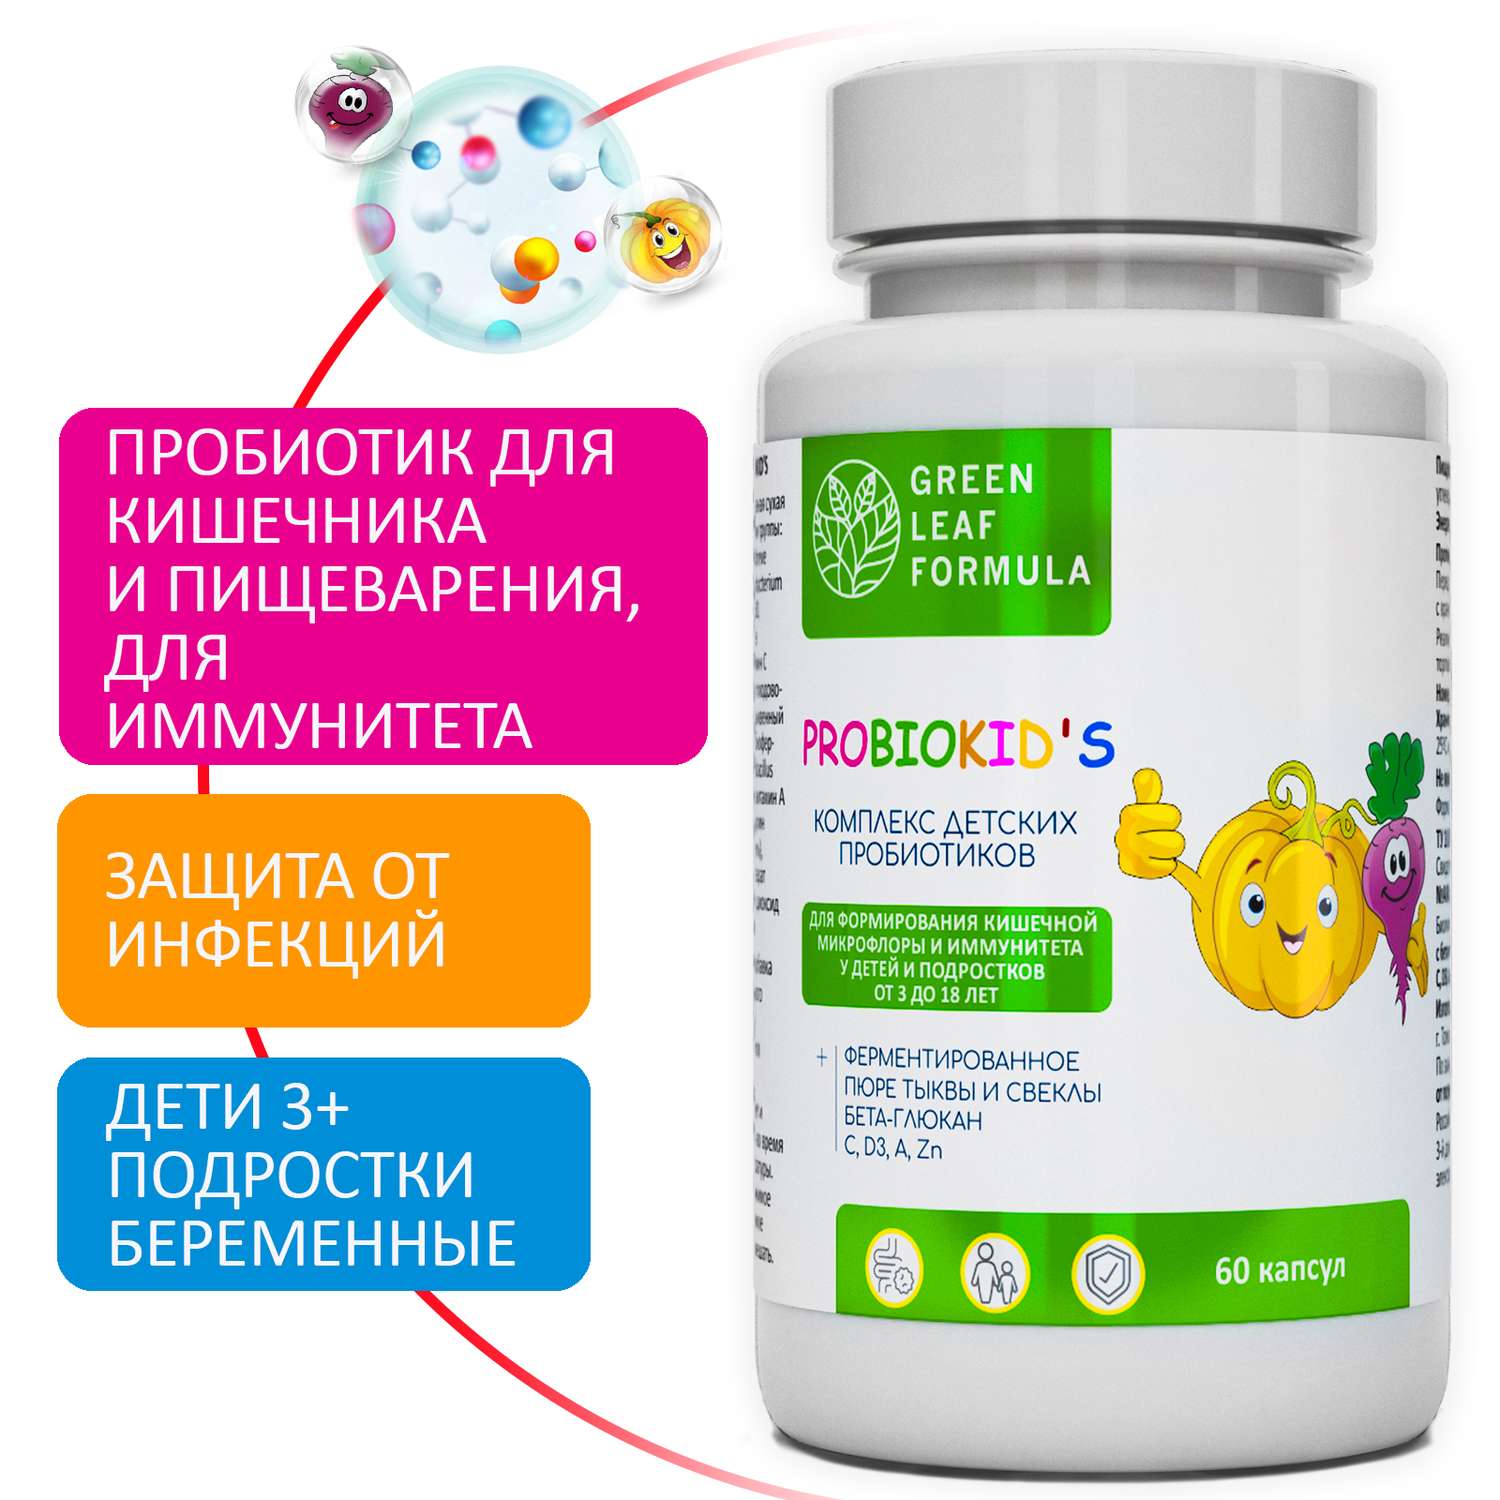 Детский пробиотик Green Leaf Formula витаминный комплекс для детей от 3 лет 3 банки по 60 капсул - фото 2